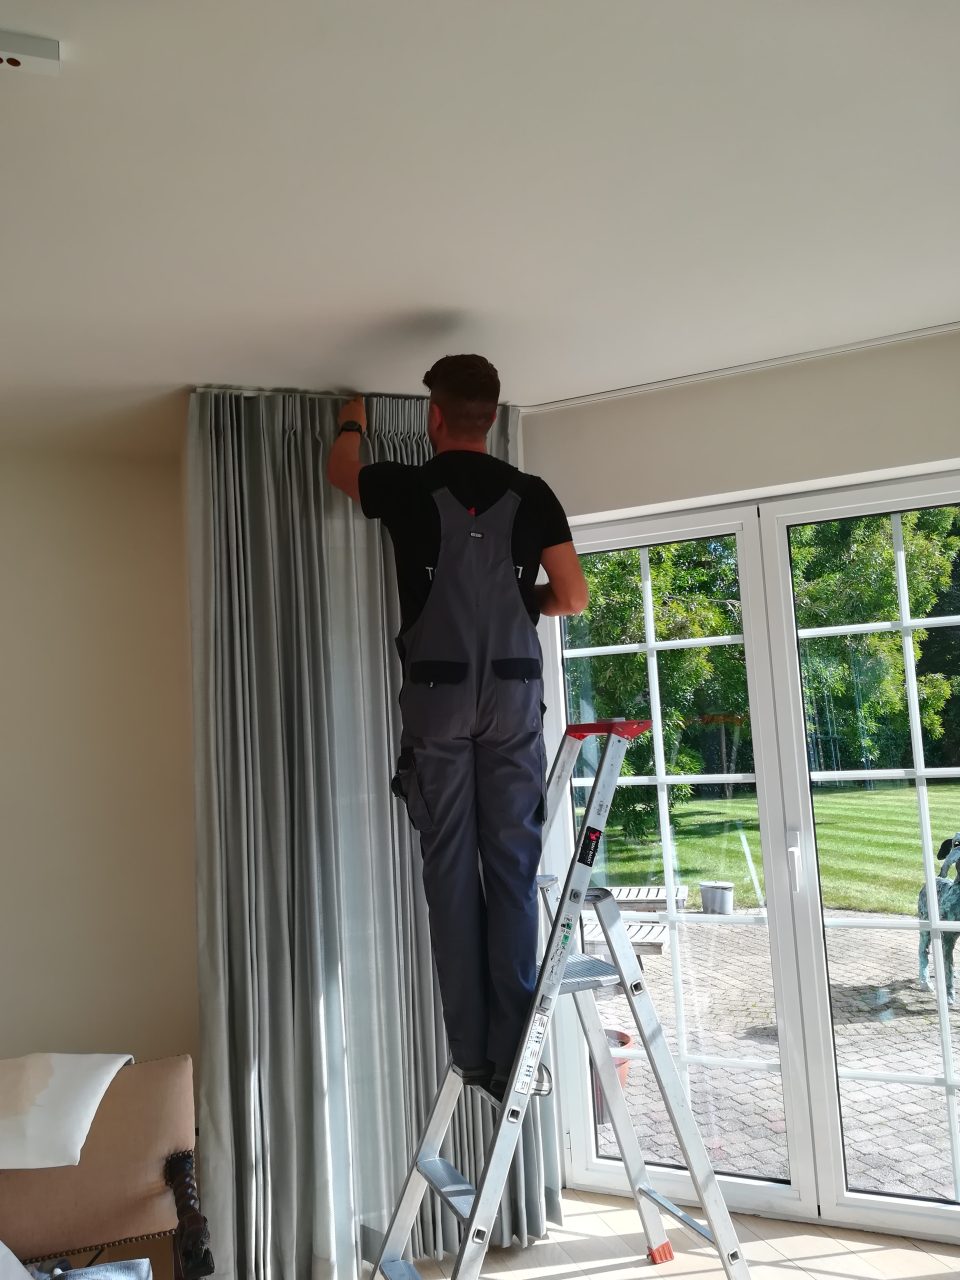 Onze Tony Baert raamdecoratie plaatser staat paraat